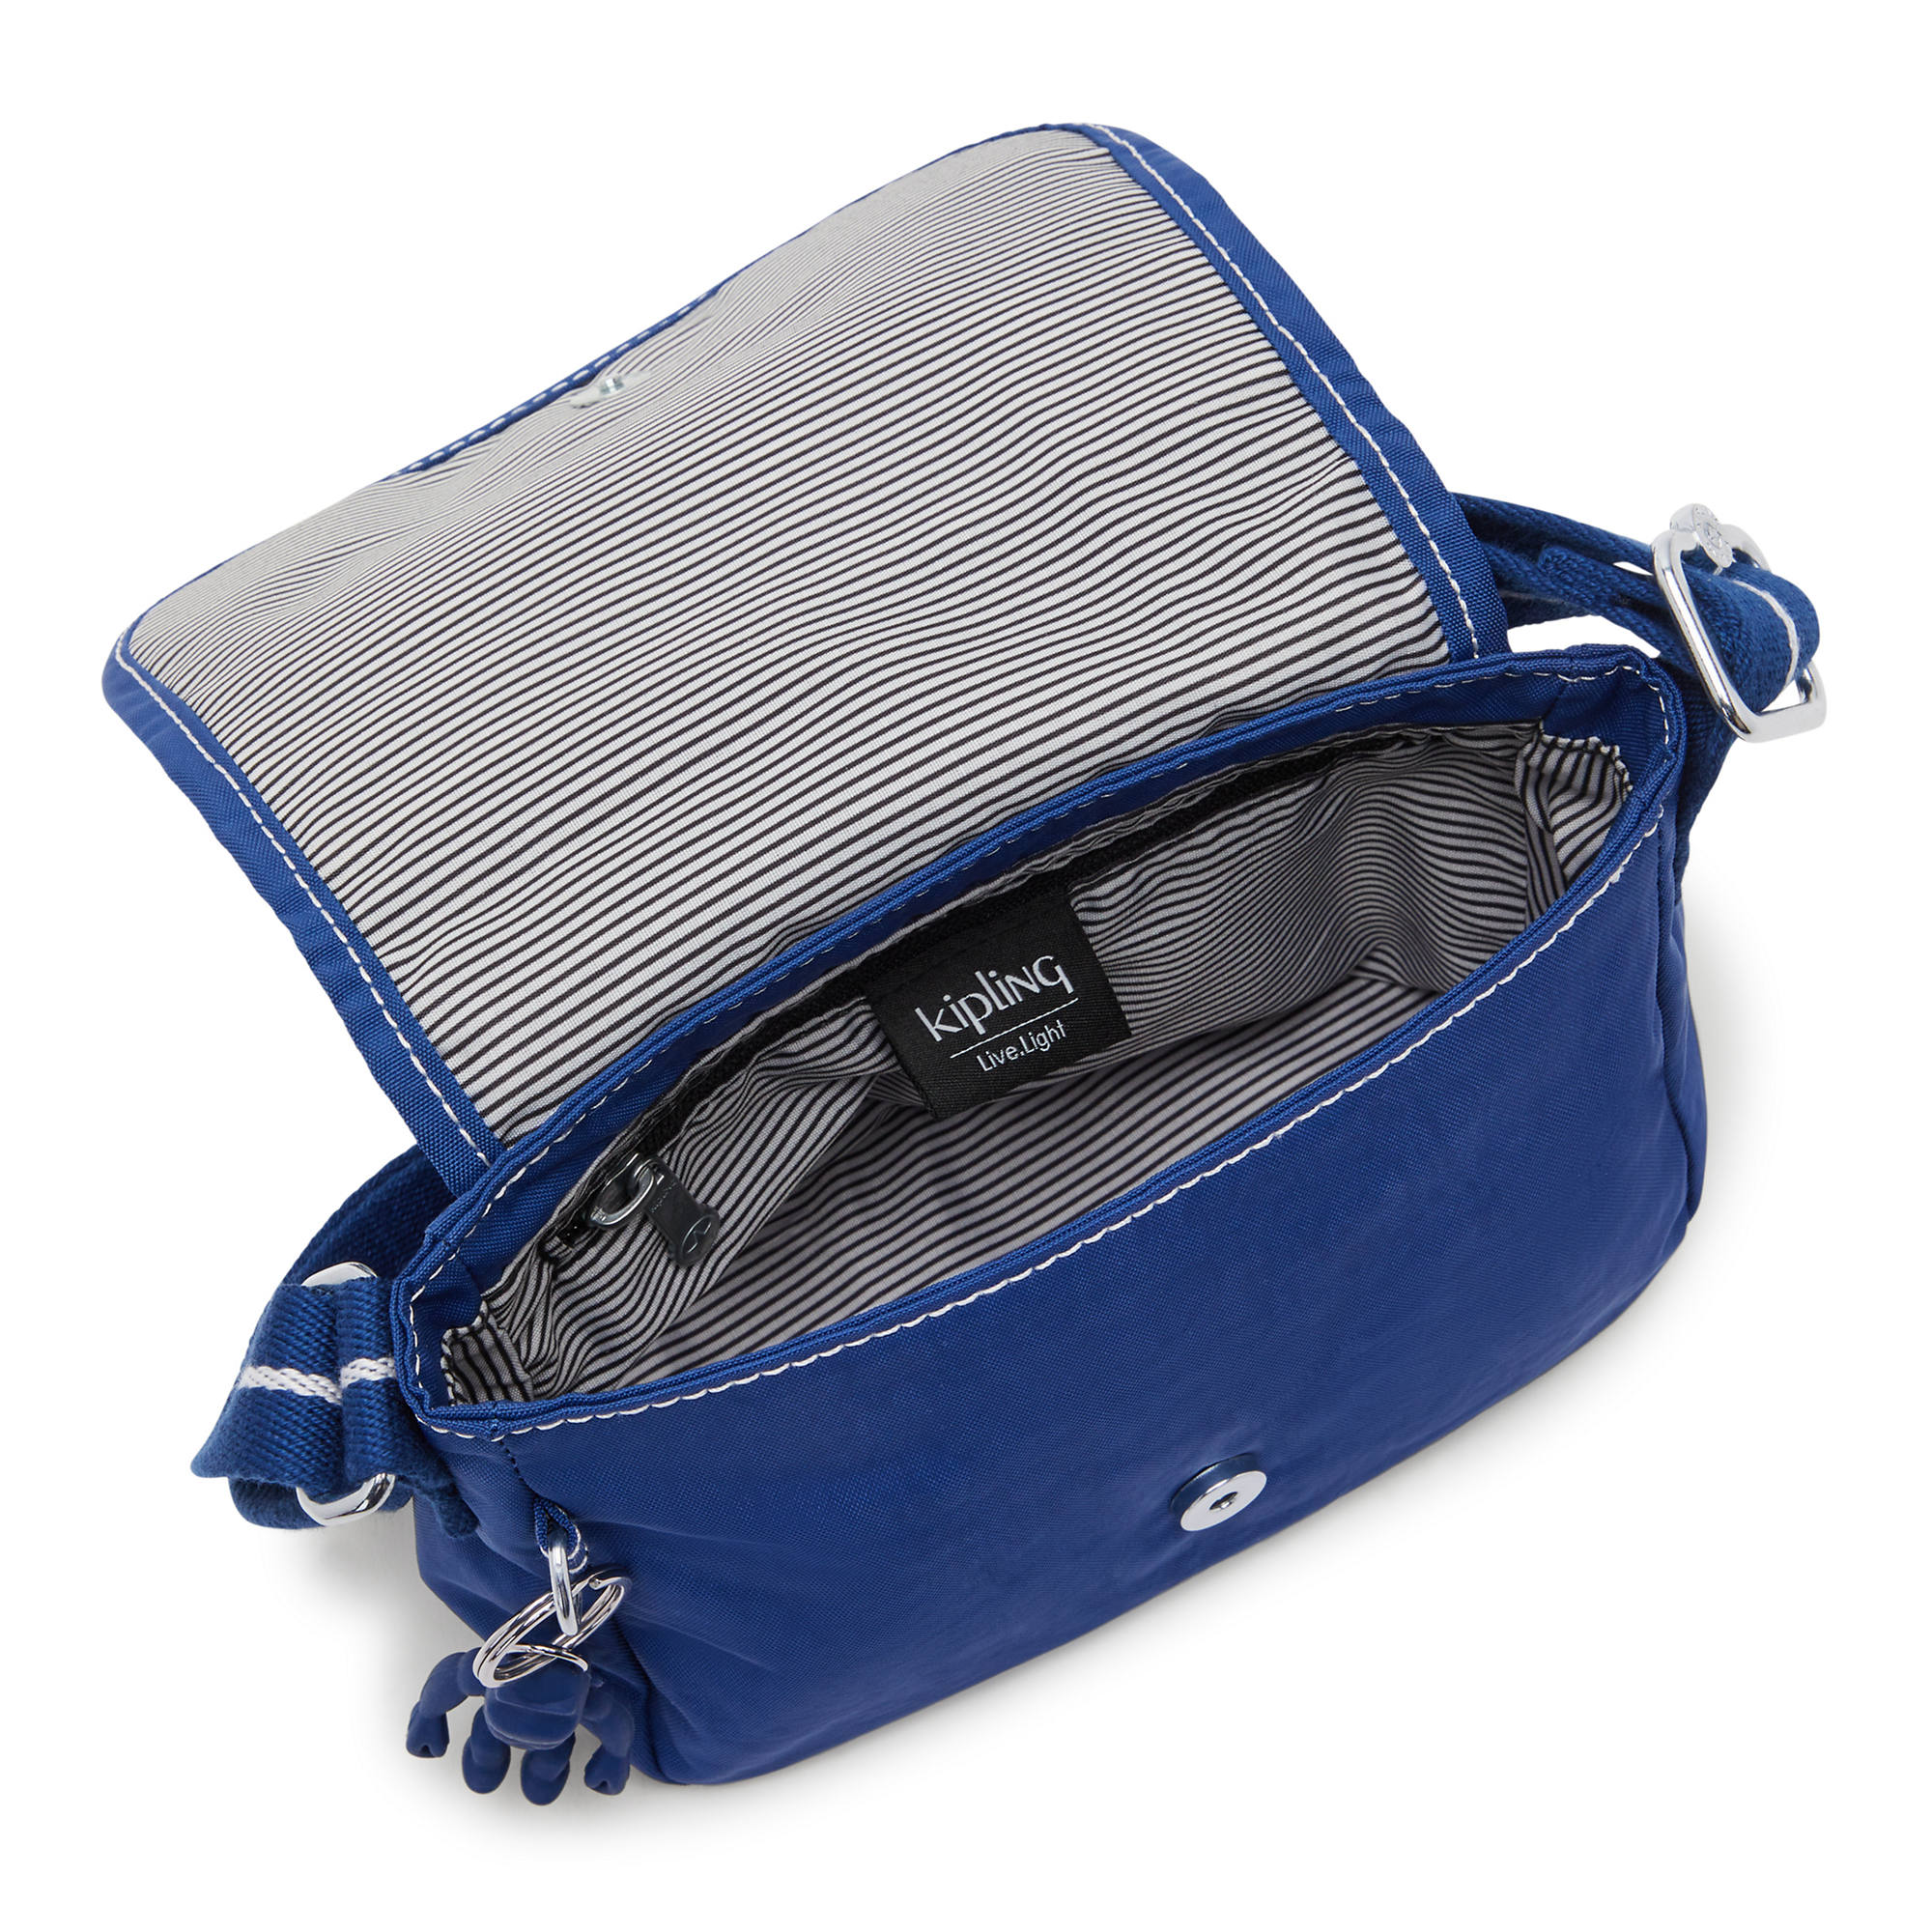 Kipling womens Sabian U crossbody bag, Blue Bleu 2, Mini US: Handbags